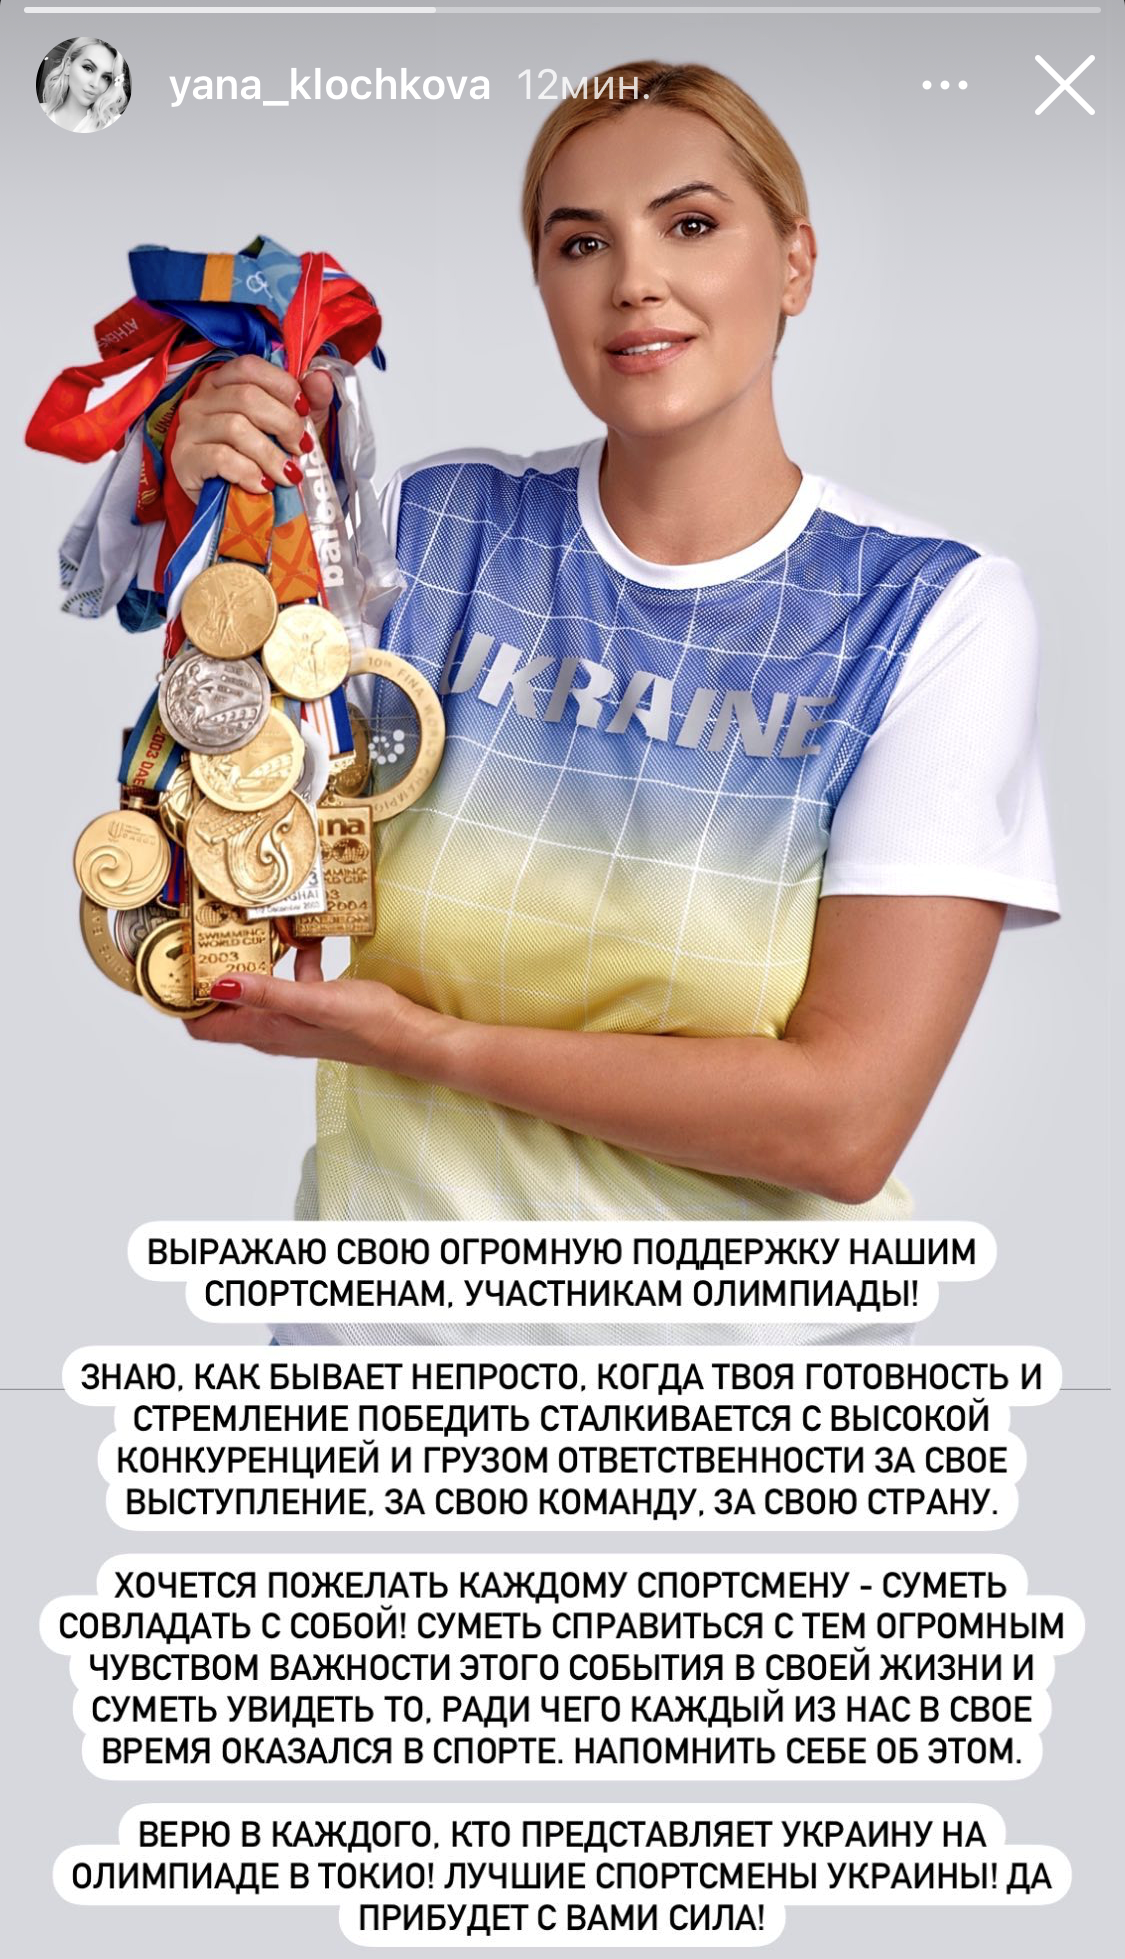 Яна Клочкова: «Лучшие спортсмены Украины, да пребудет с вами сила»